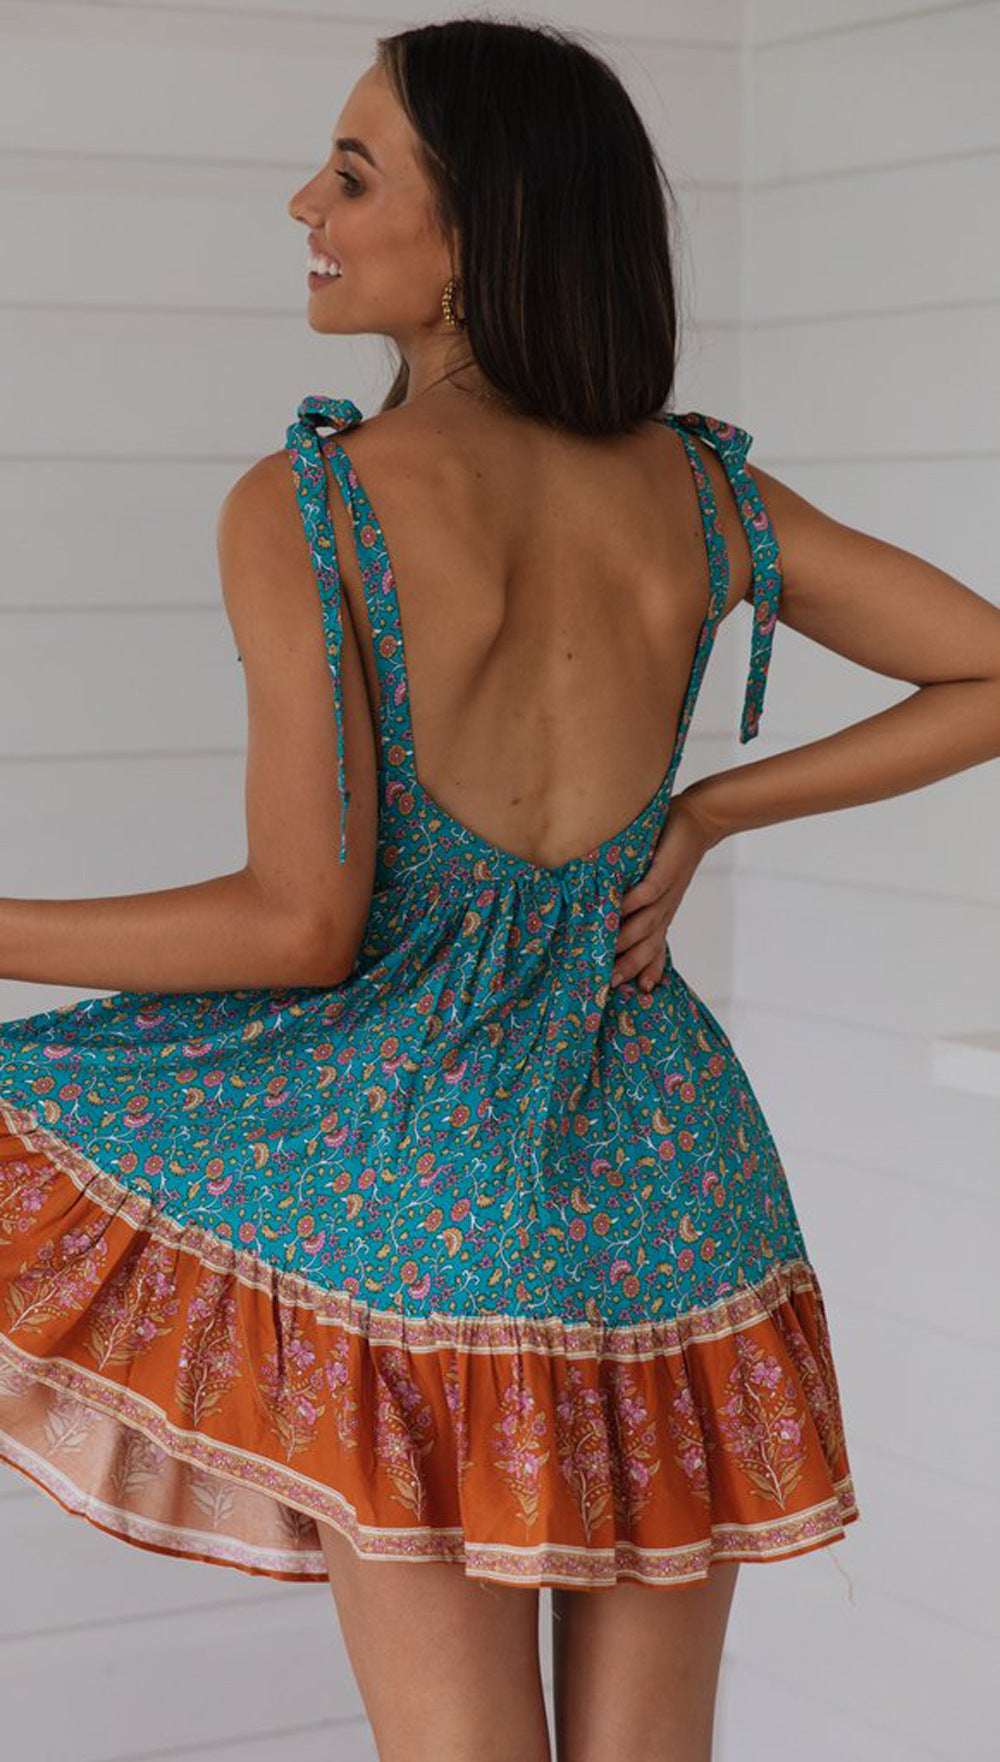 Turquoise Floral Shoulder-Tie Backless Dress